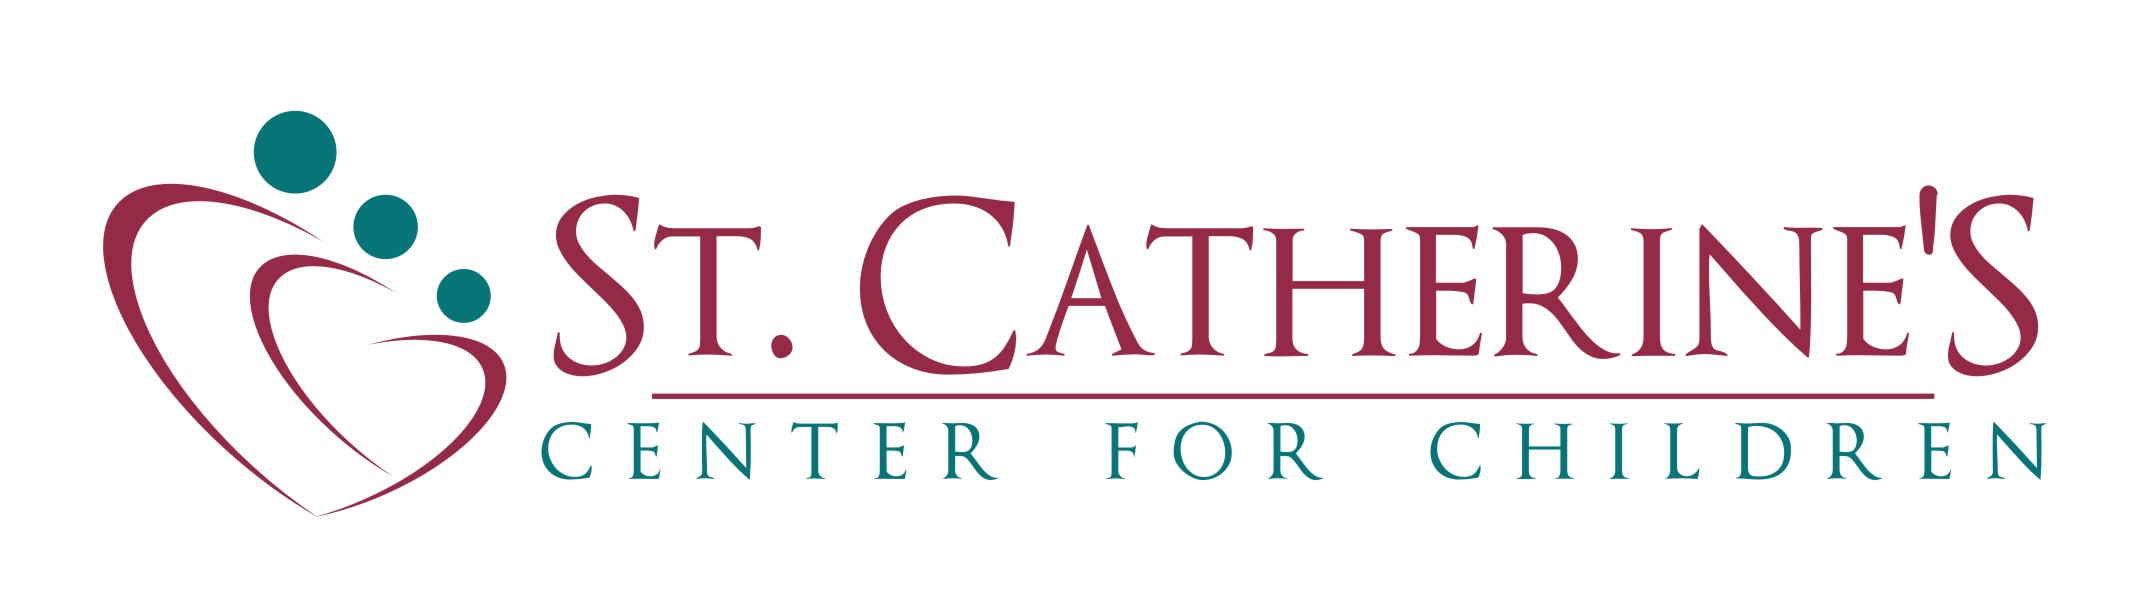 St Catherine's Center for children logo